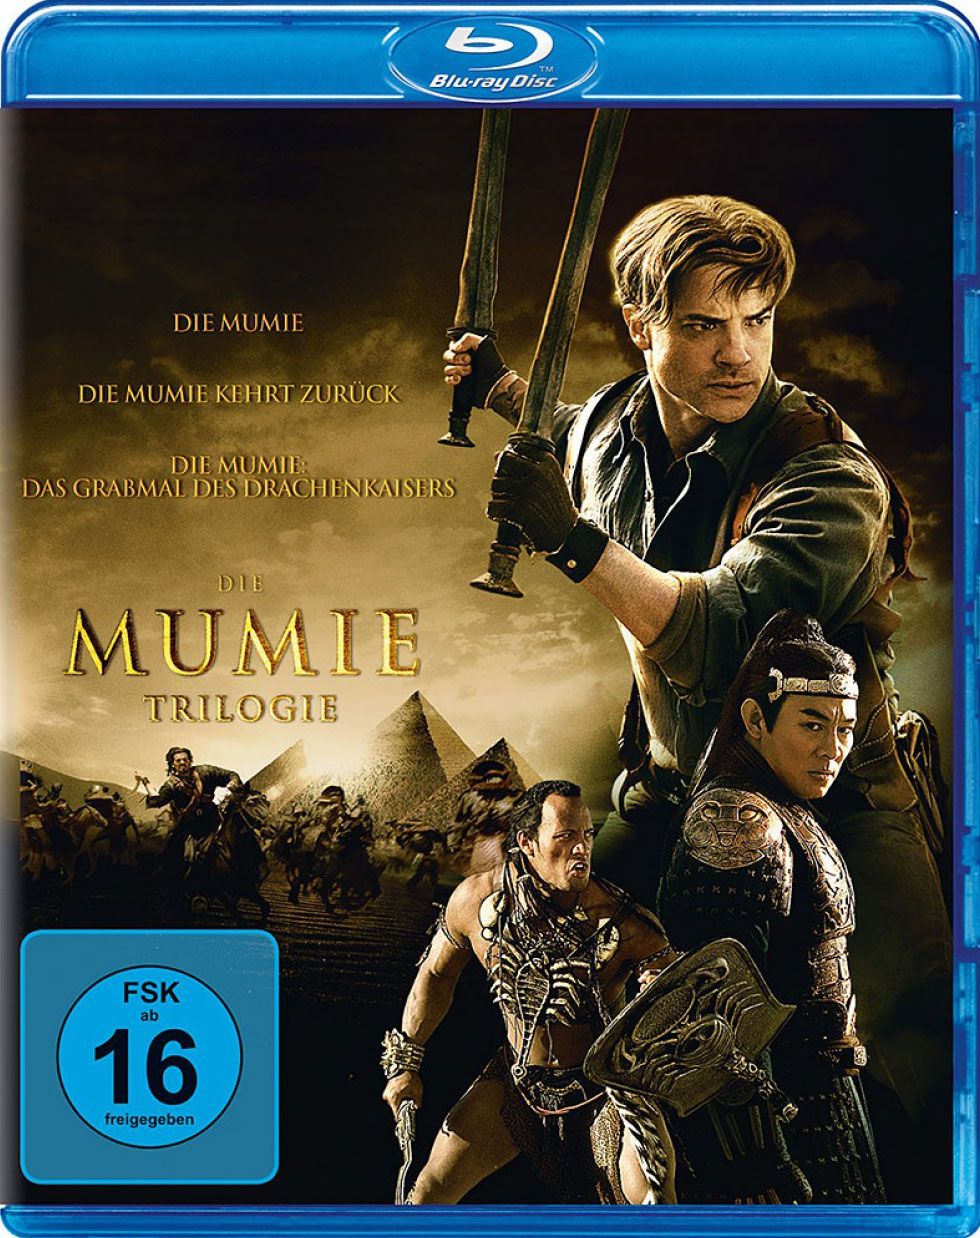 Mumie, Die - Trilogie (Neuauflage) (3 Discs) (BLURAY)